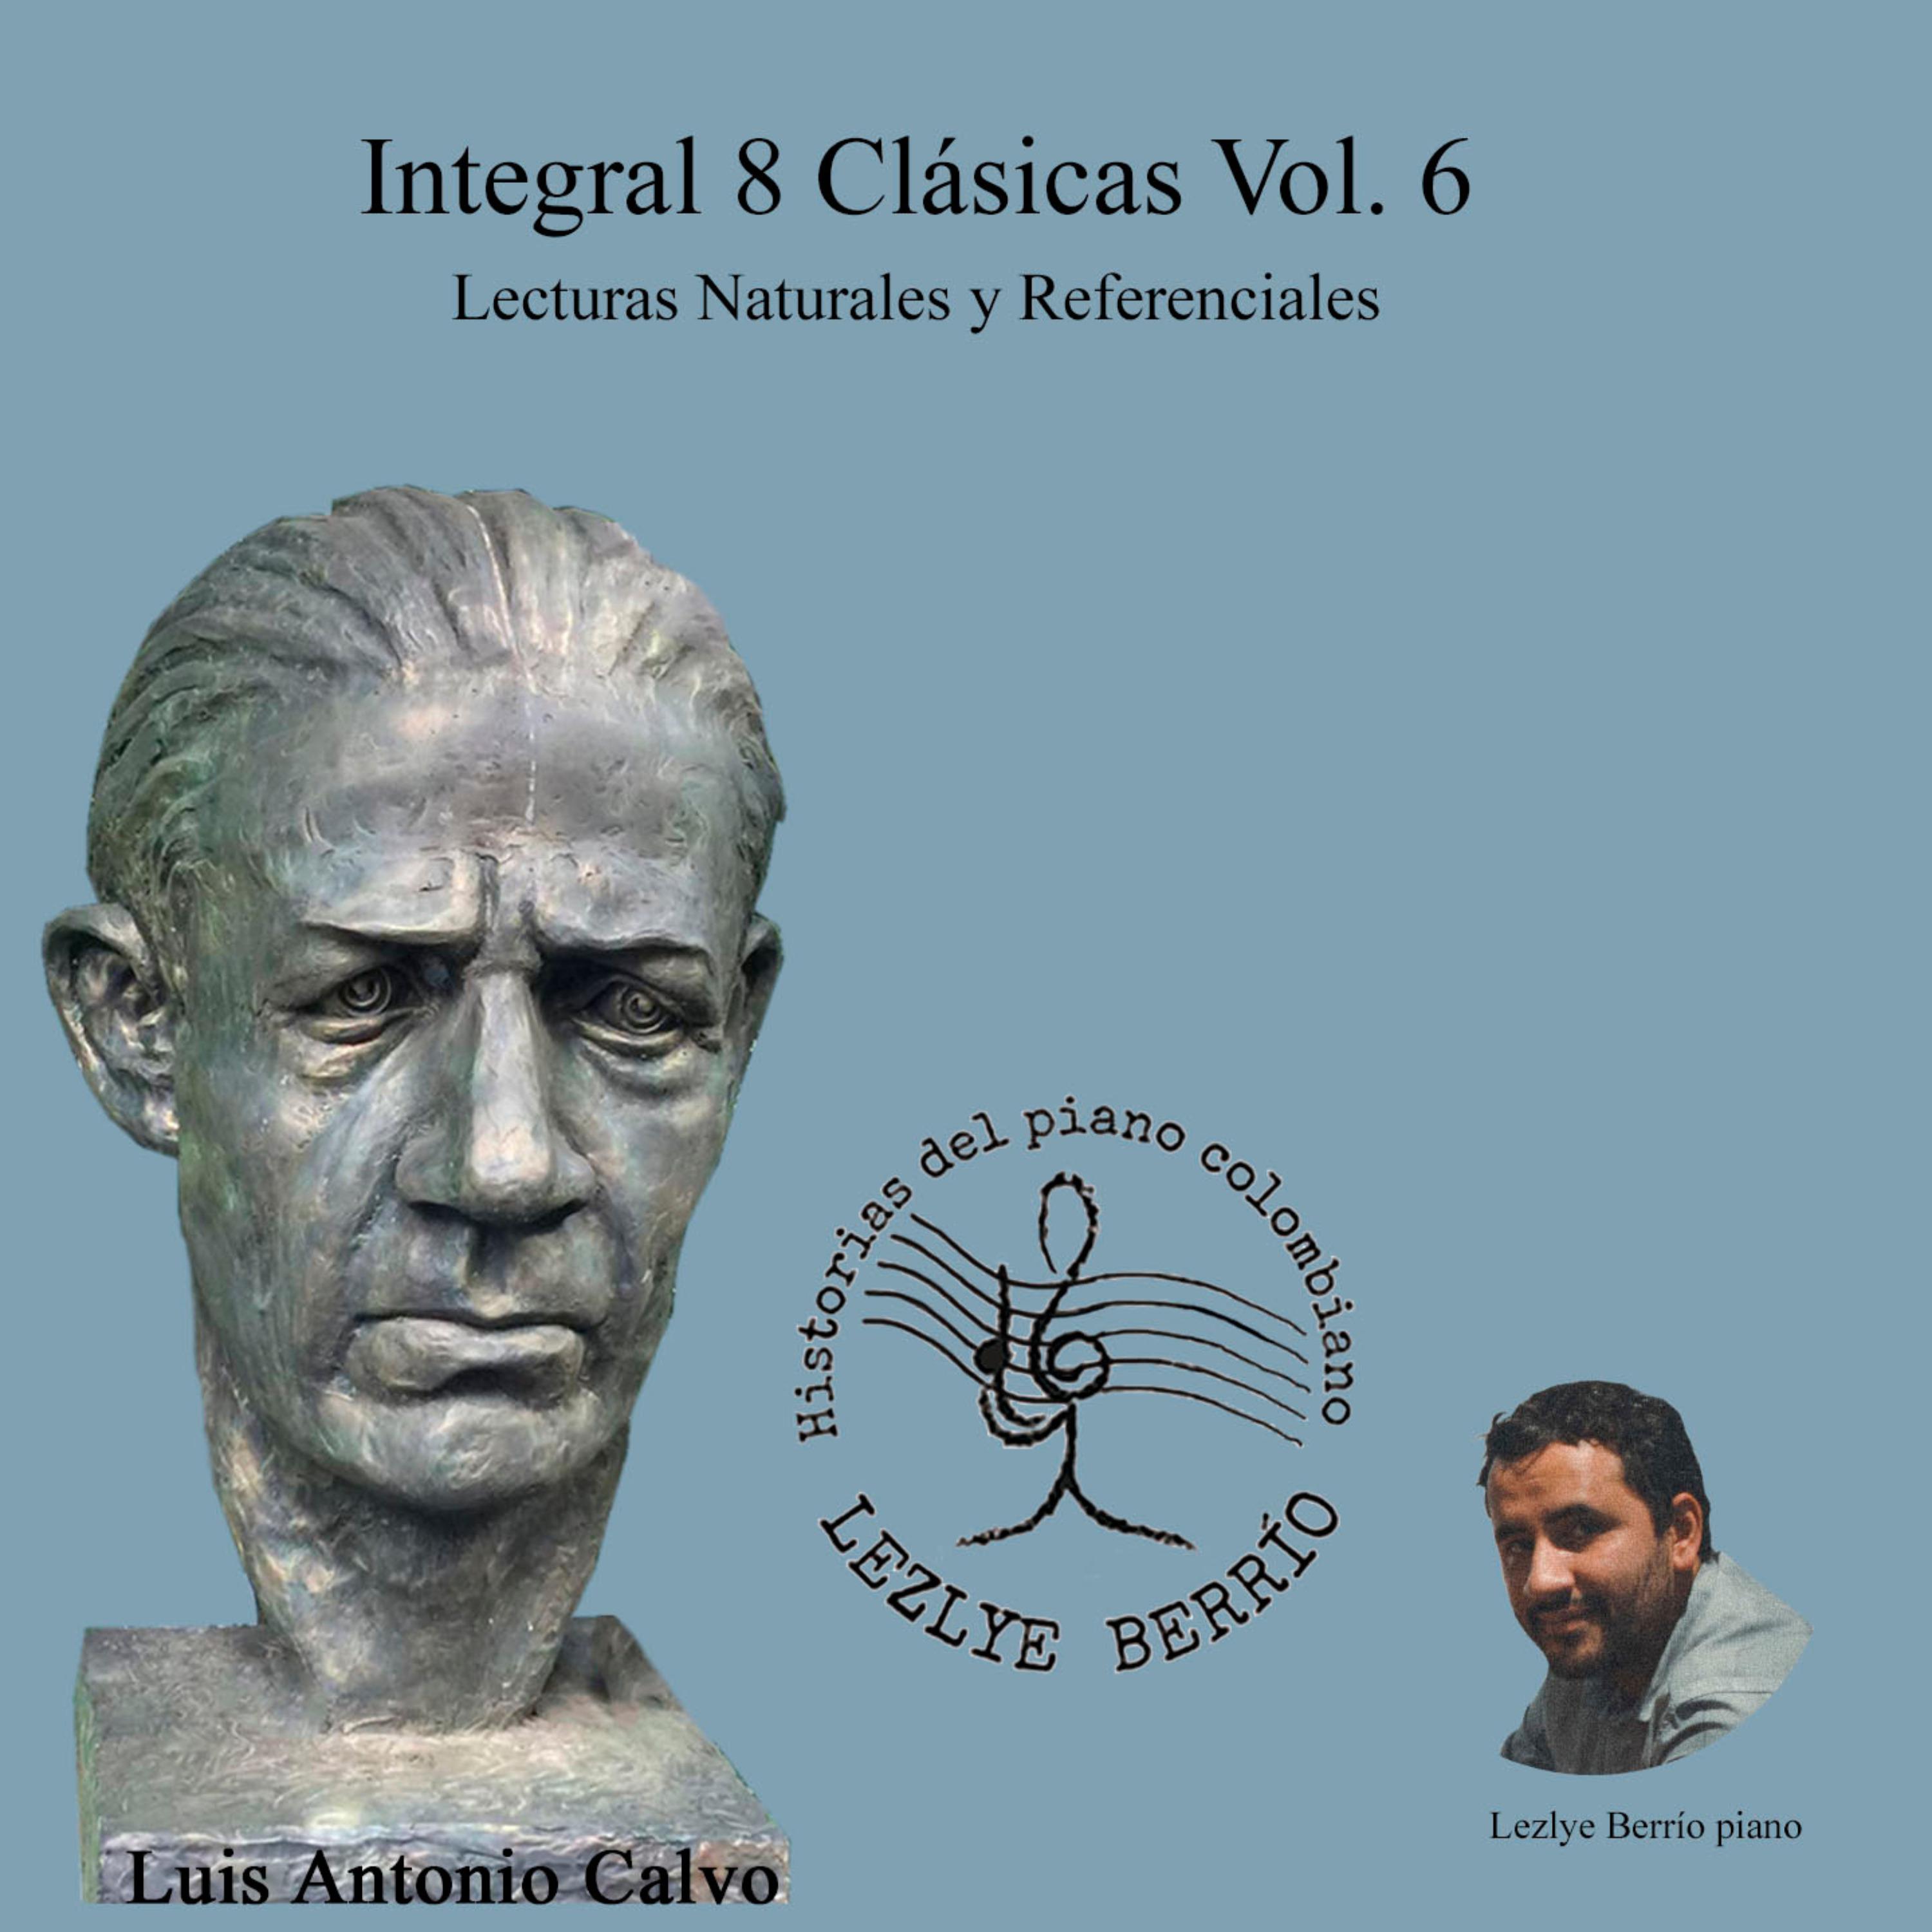 Постер альбома Historias del Piano Colombiano, Lecturas Naturales y Referenciales, Integral Luis Antonio Calvo, 8 Clásicas, Vol. 6